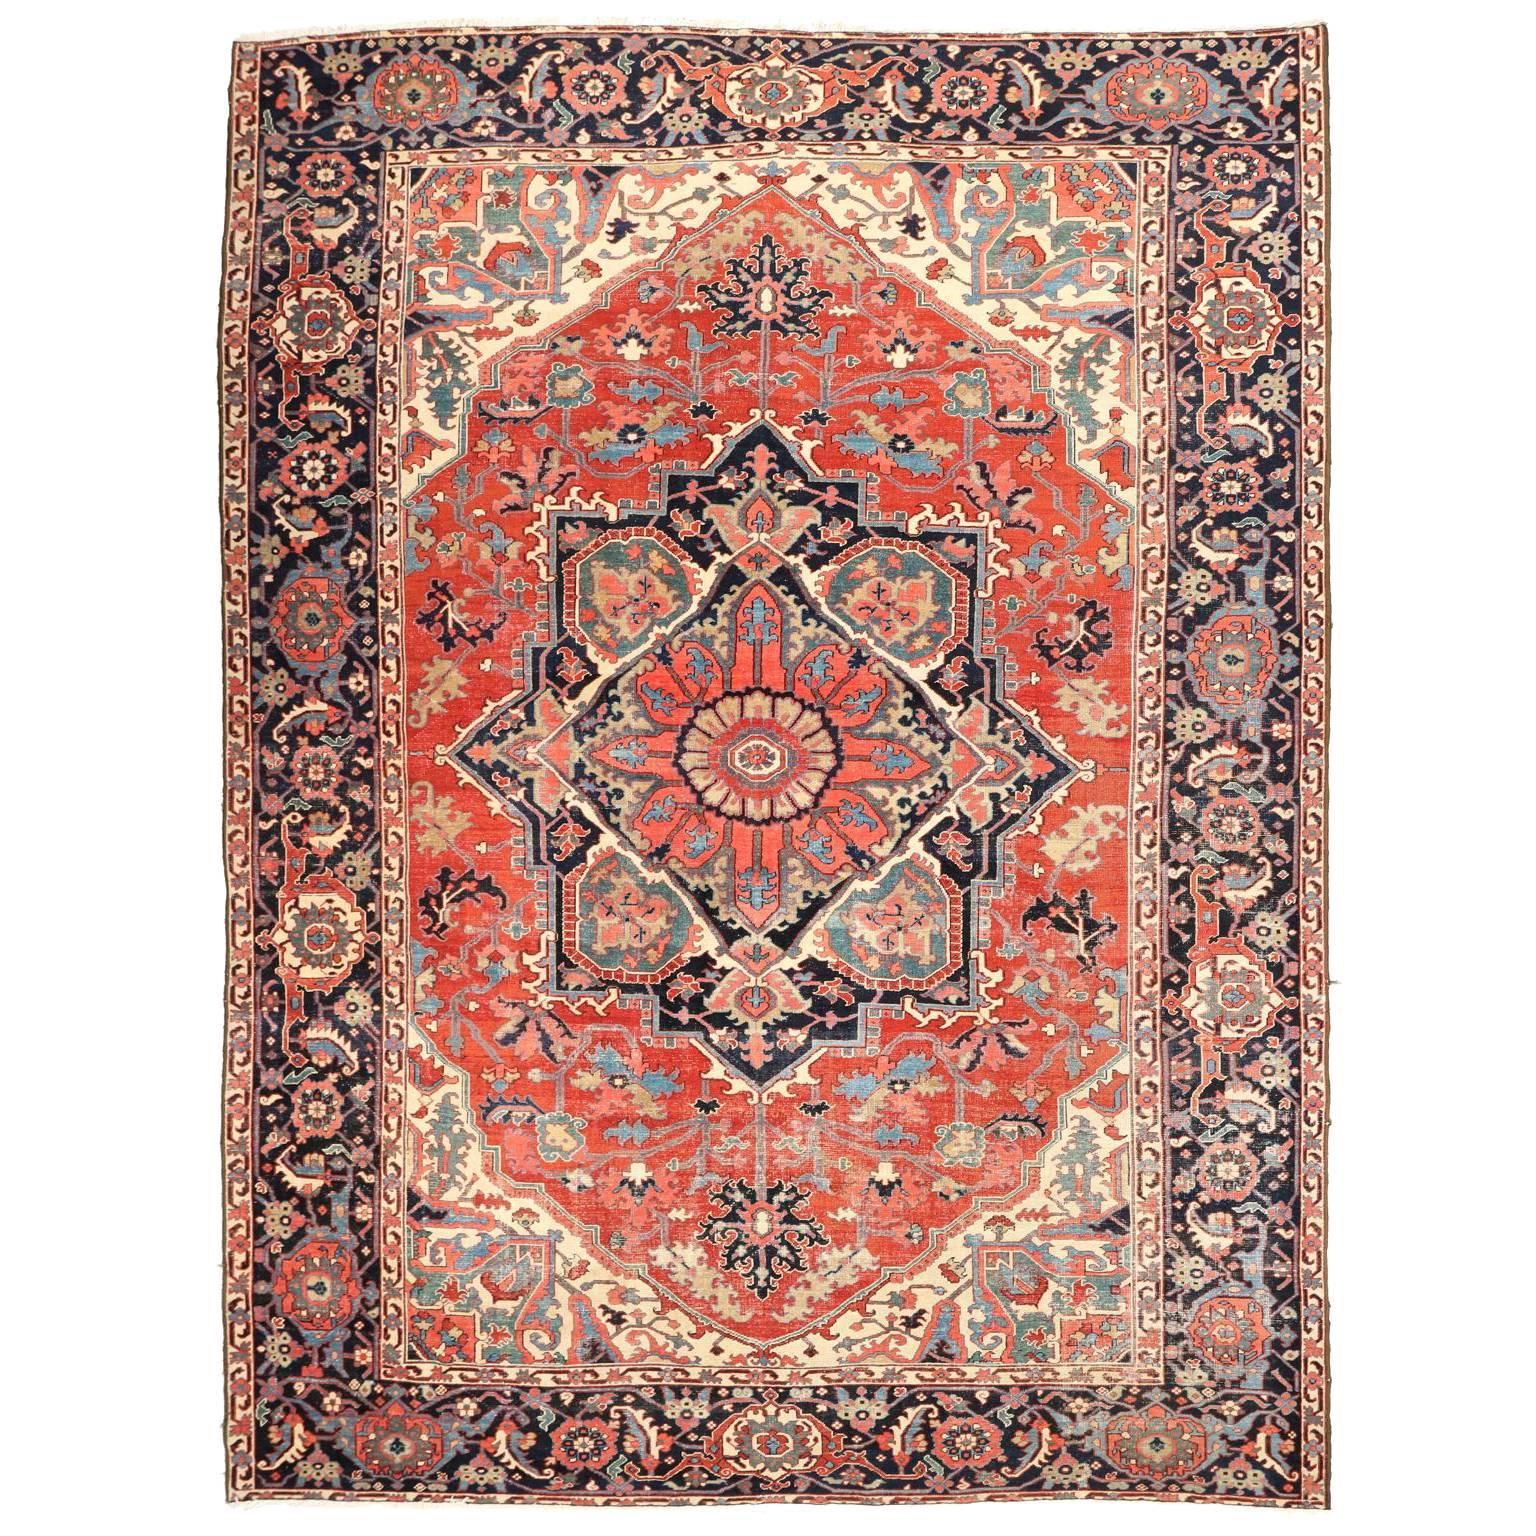 Fine Authentic Persian Antique Heriz Serapi Carpet Rug, circa 1910